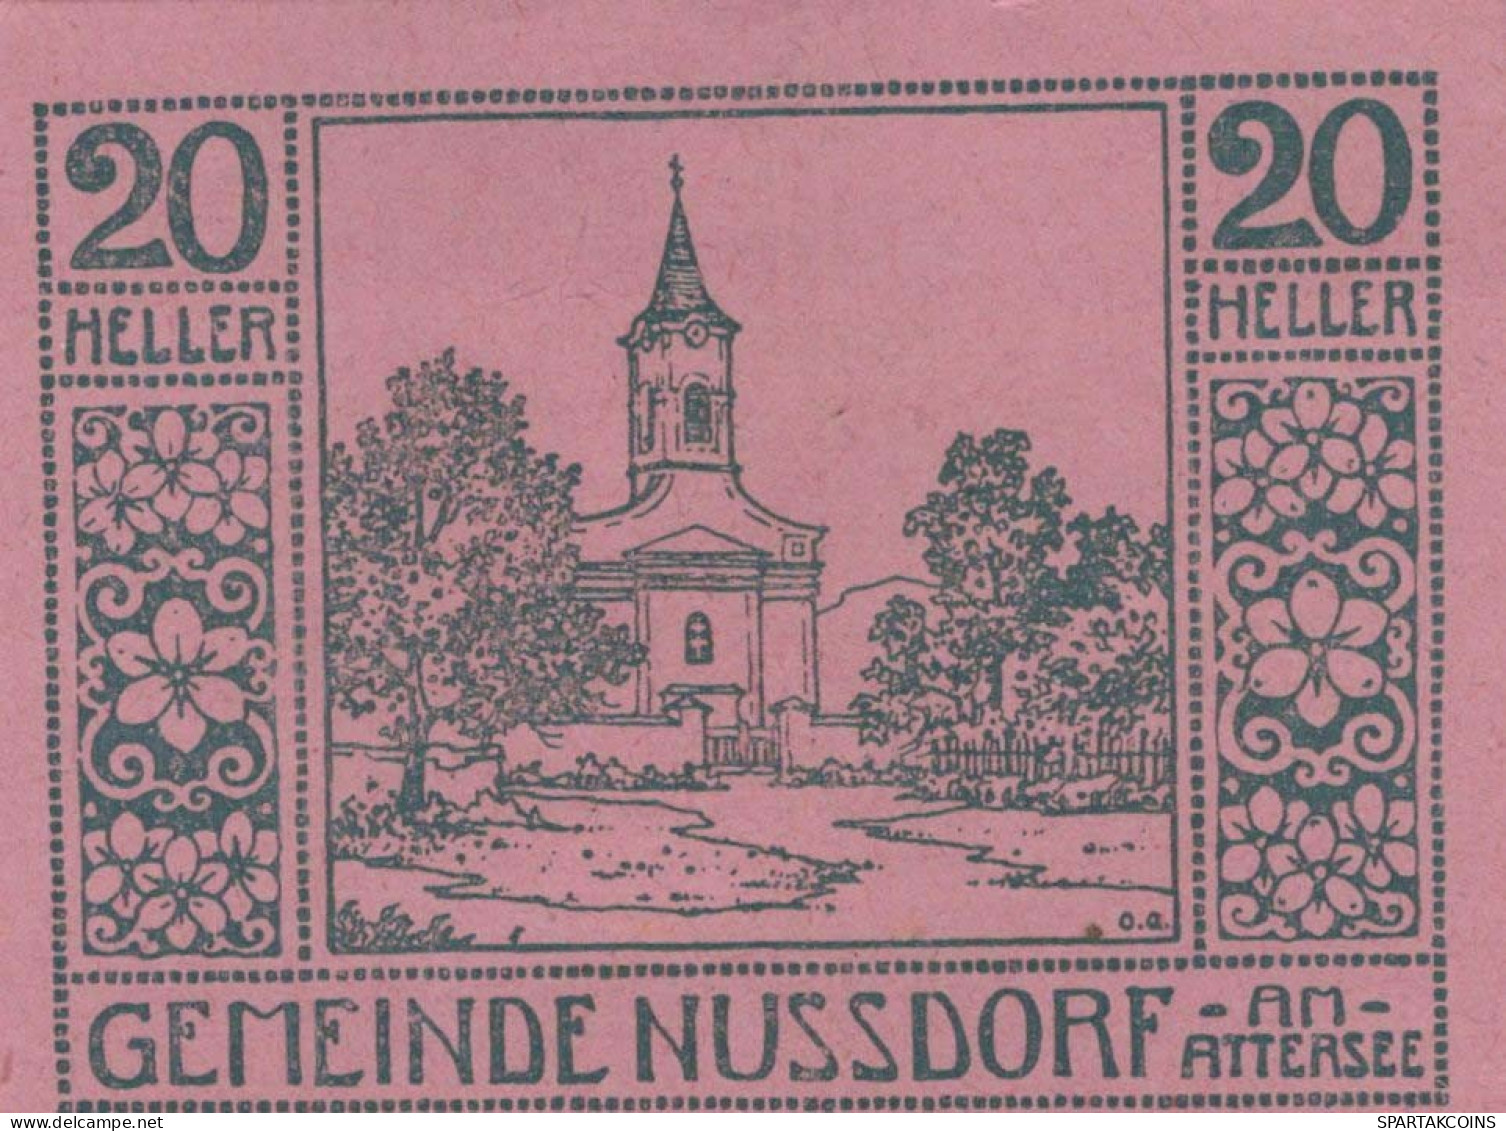 20 HELLER 1920 Stadt NUSSDORF AM ATTERSEE Oberösterreich Österreich Notgeld Papiergeld Banknote #PG959 - [11] Local Banknote Issues